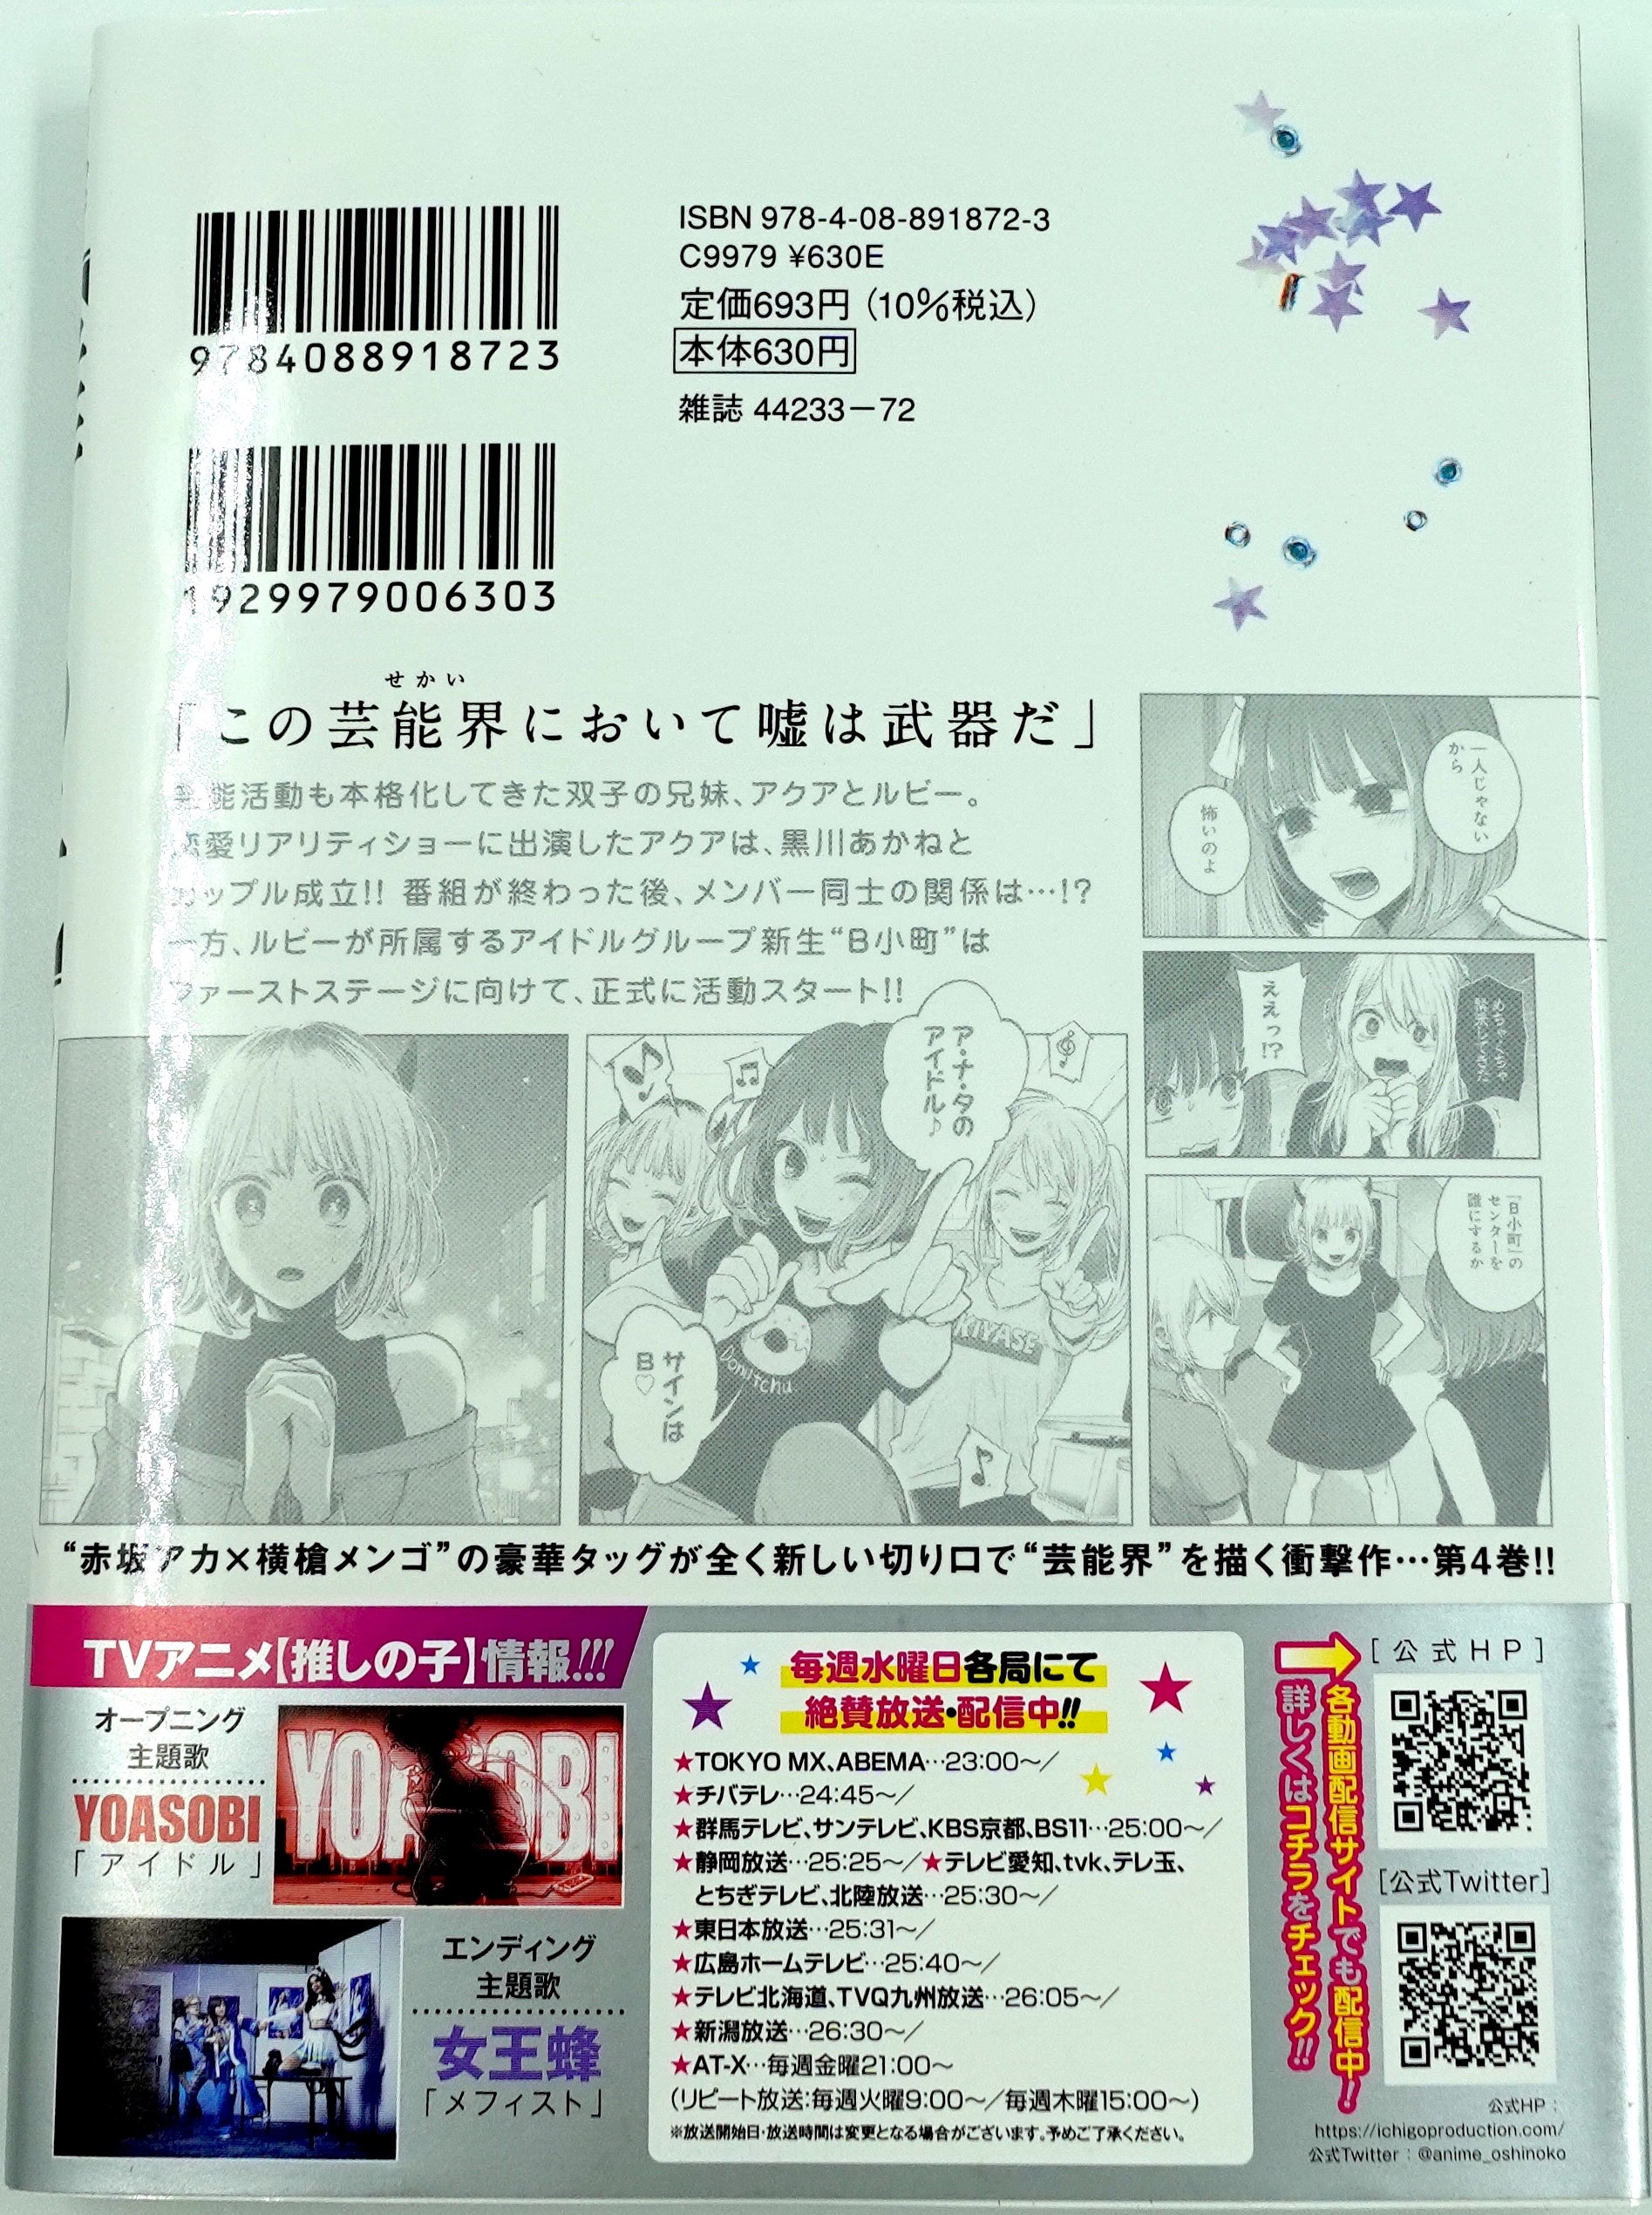 Oshi no Ko Vol.4 - ISBN:9784088918723